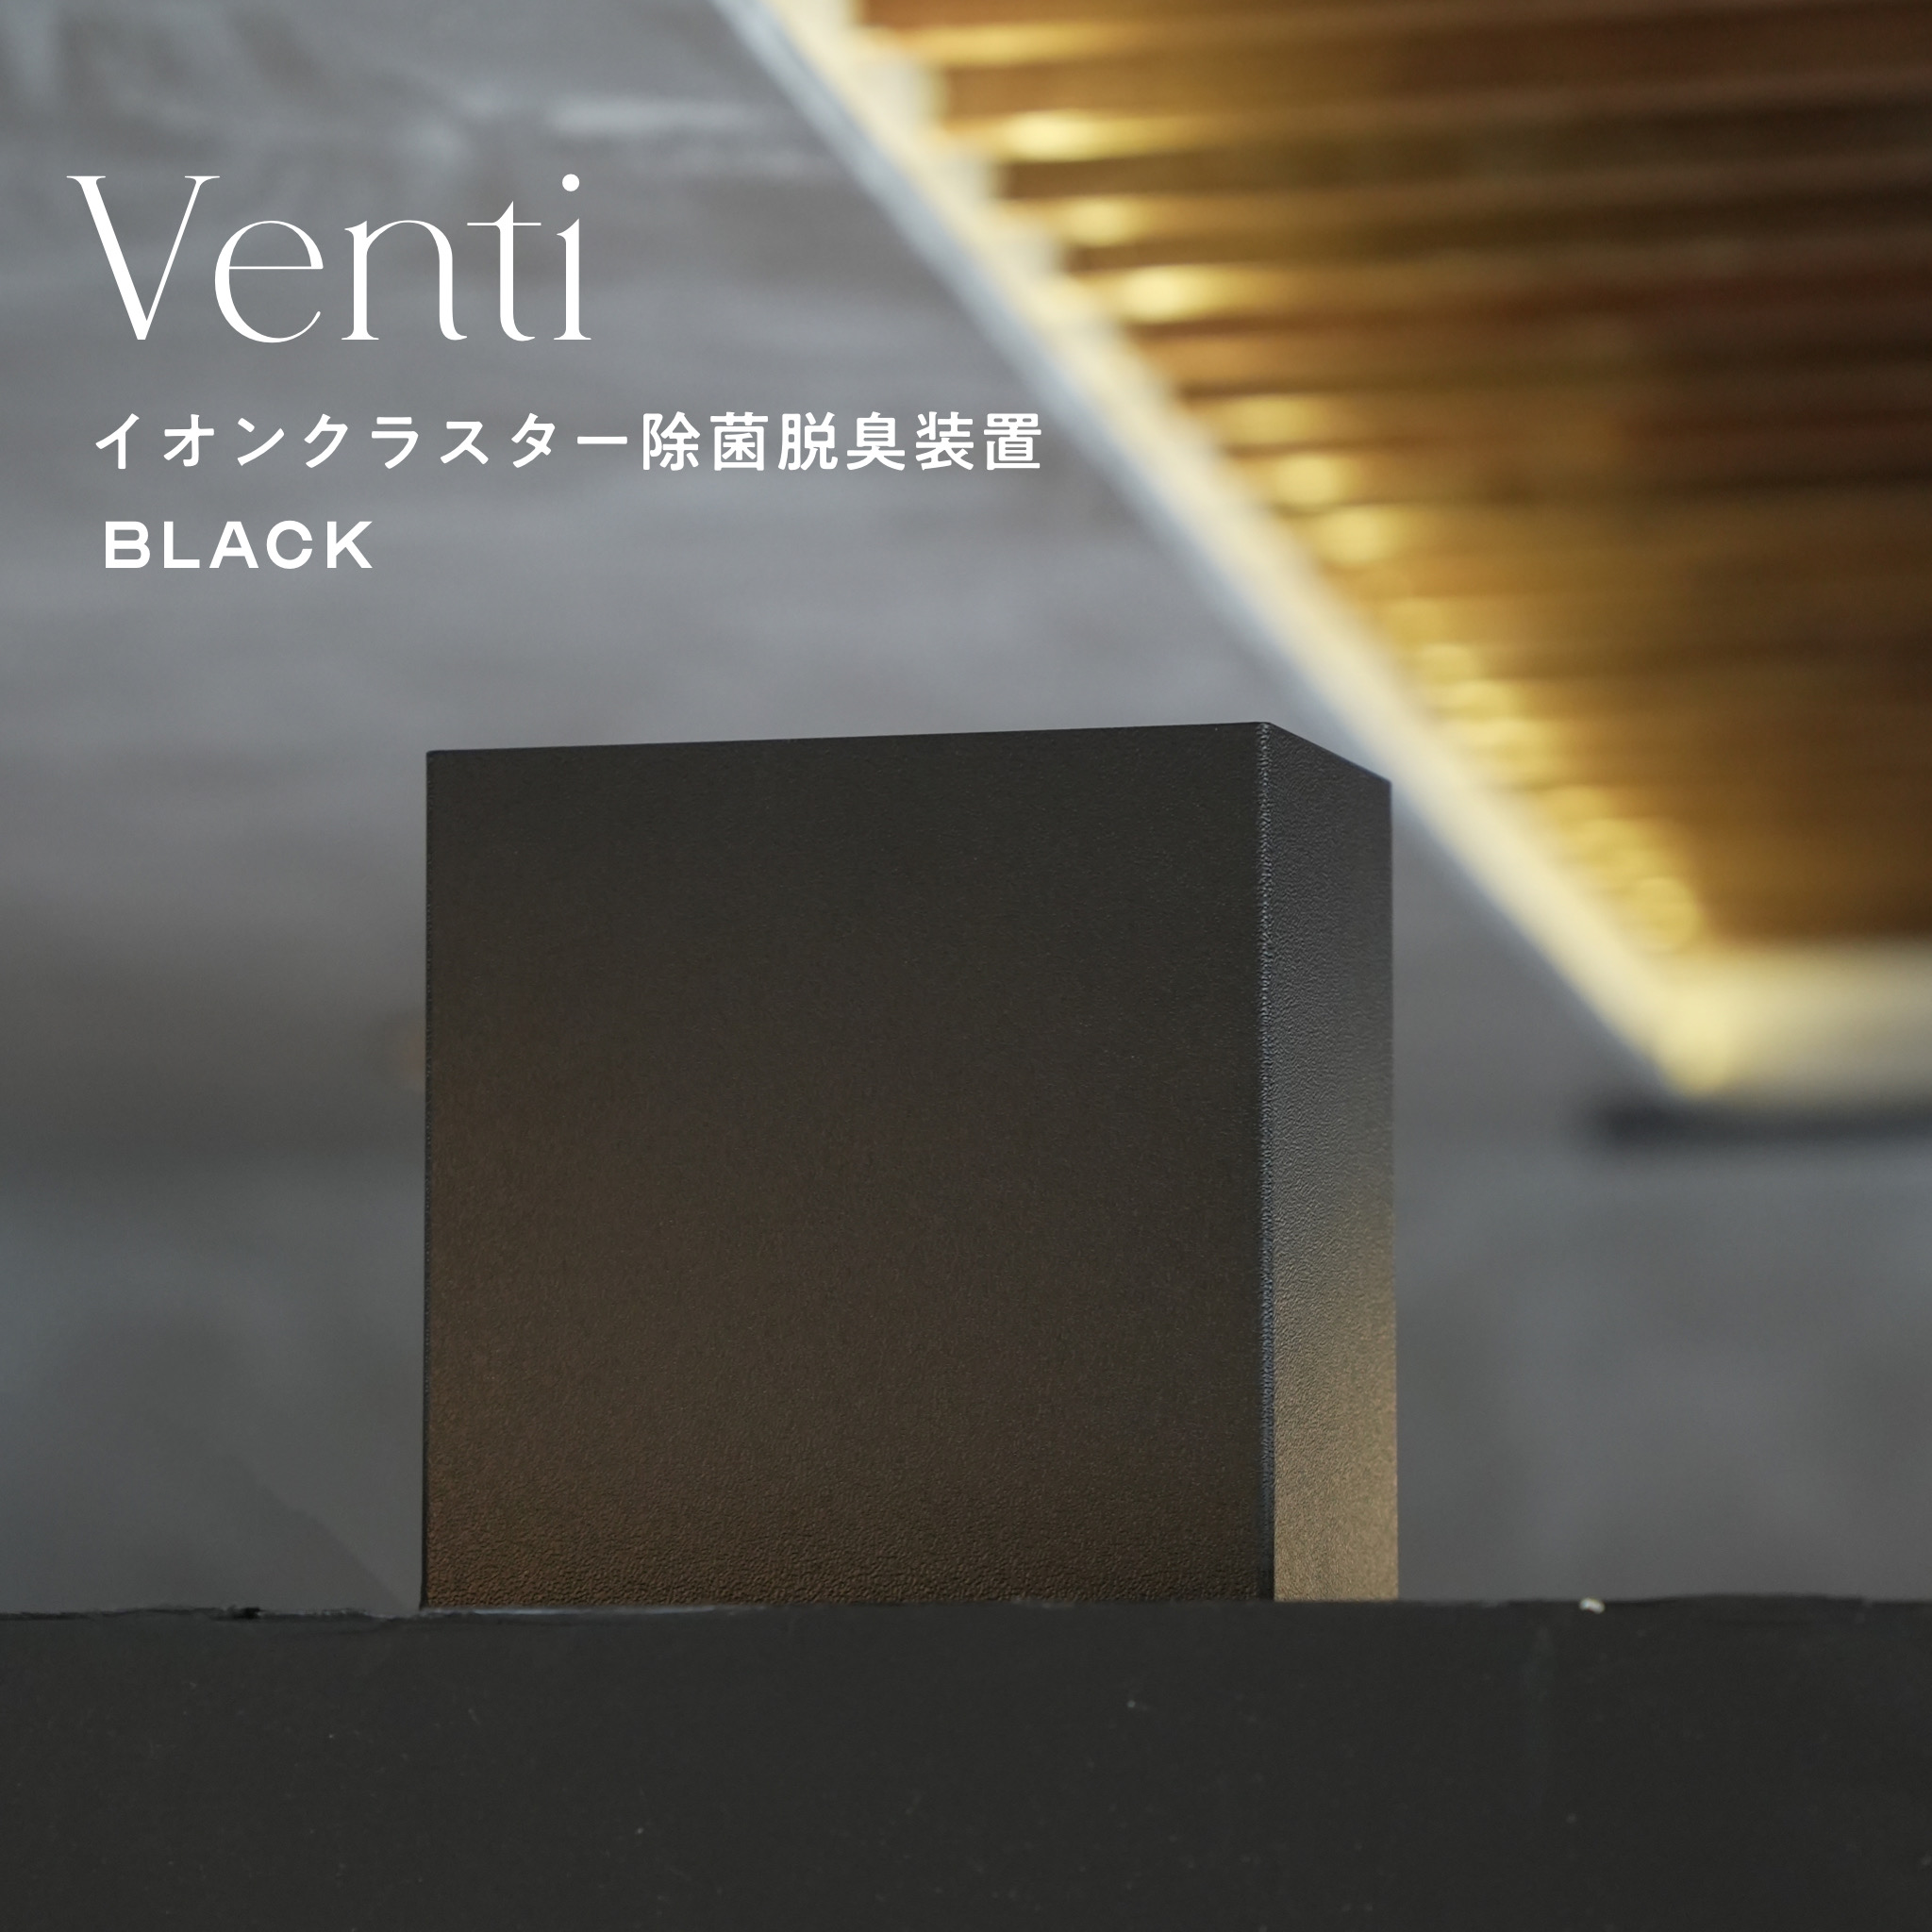 壁掛け型イオンクラスター除菌脱臭装置“Venti” BLACK